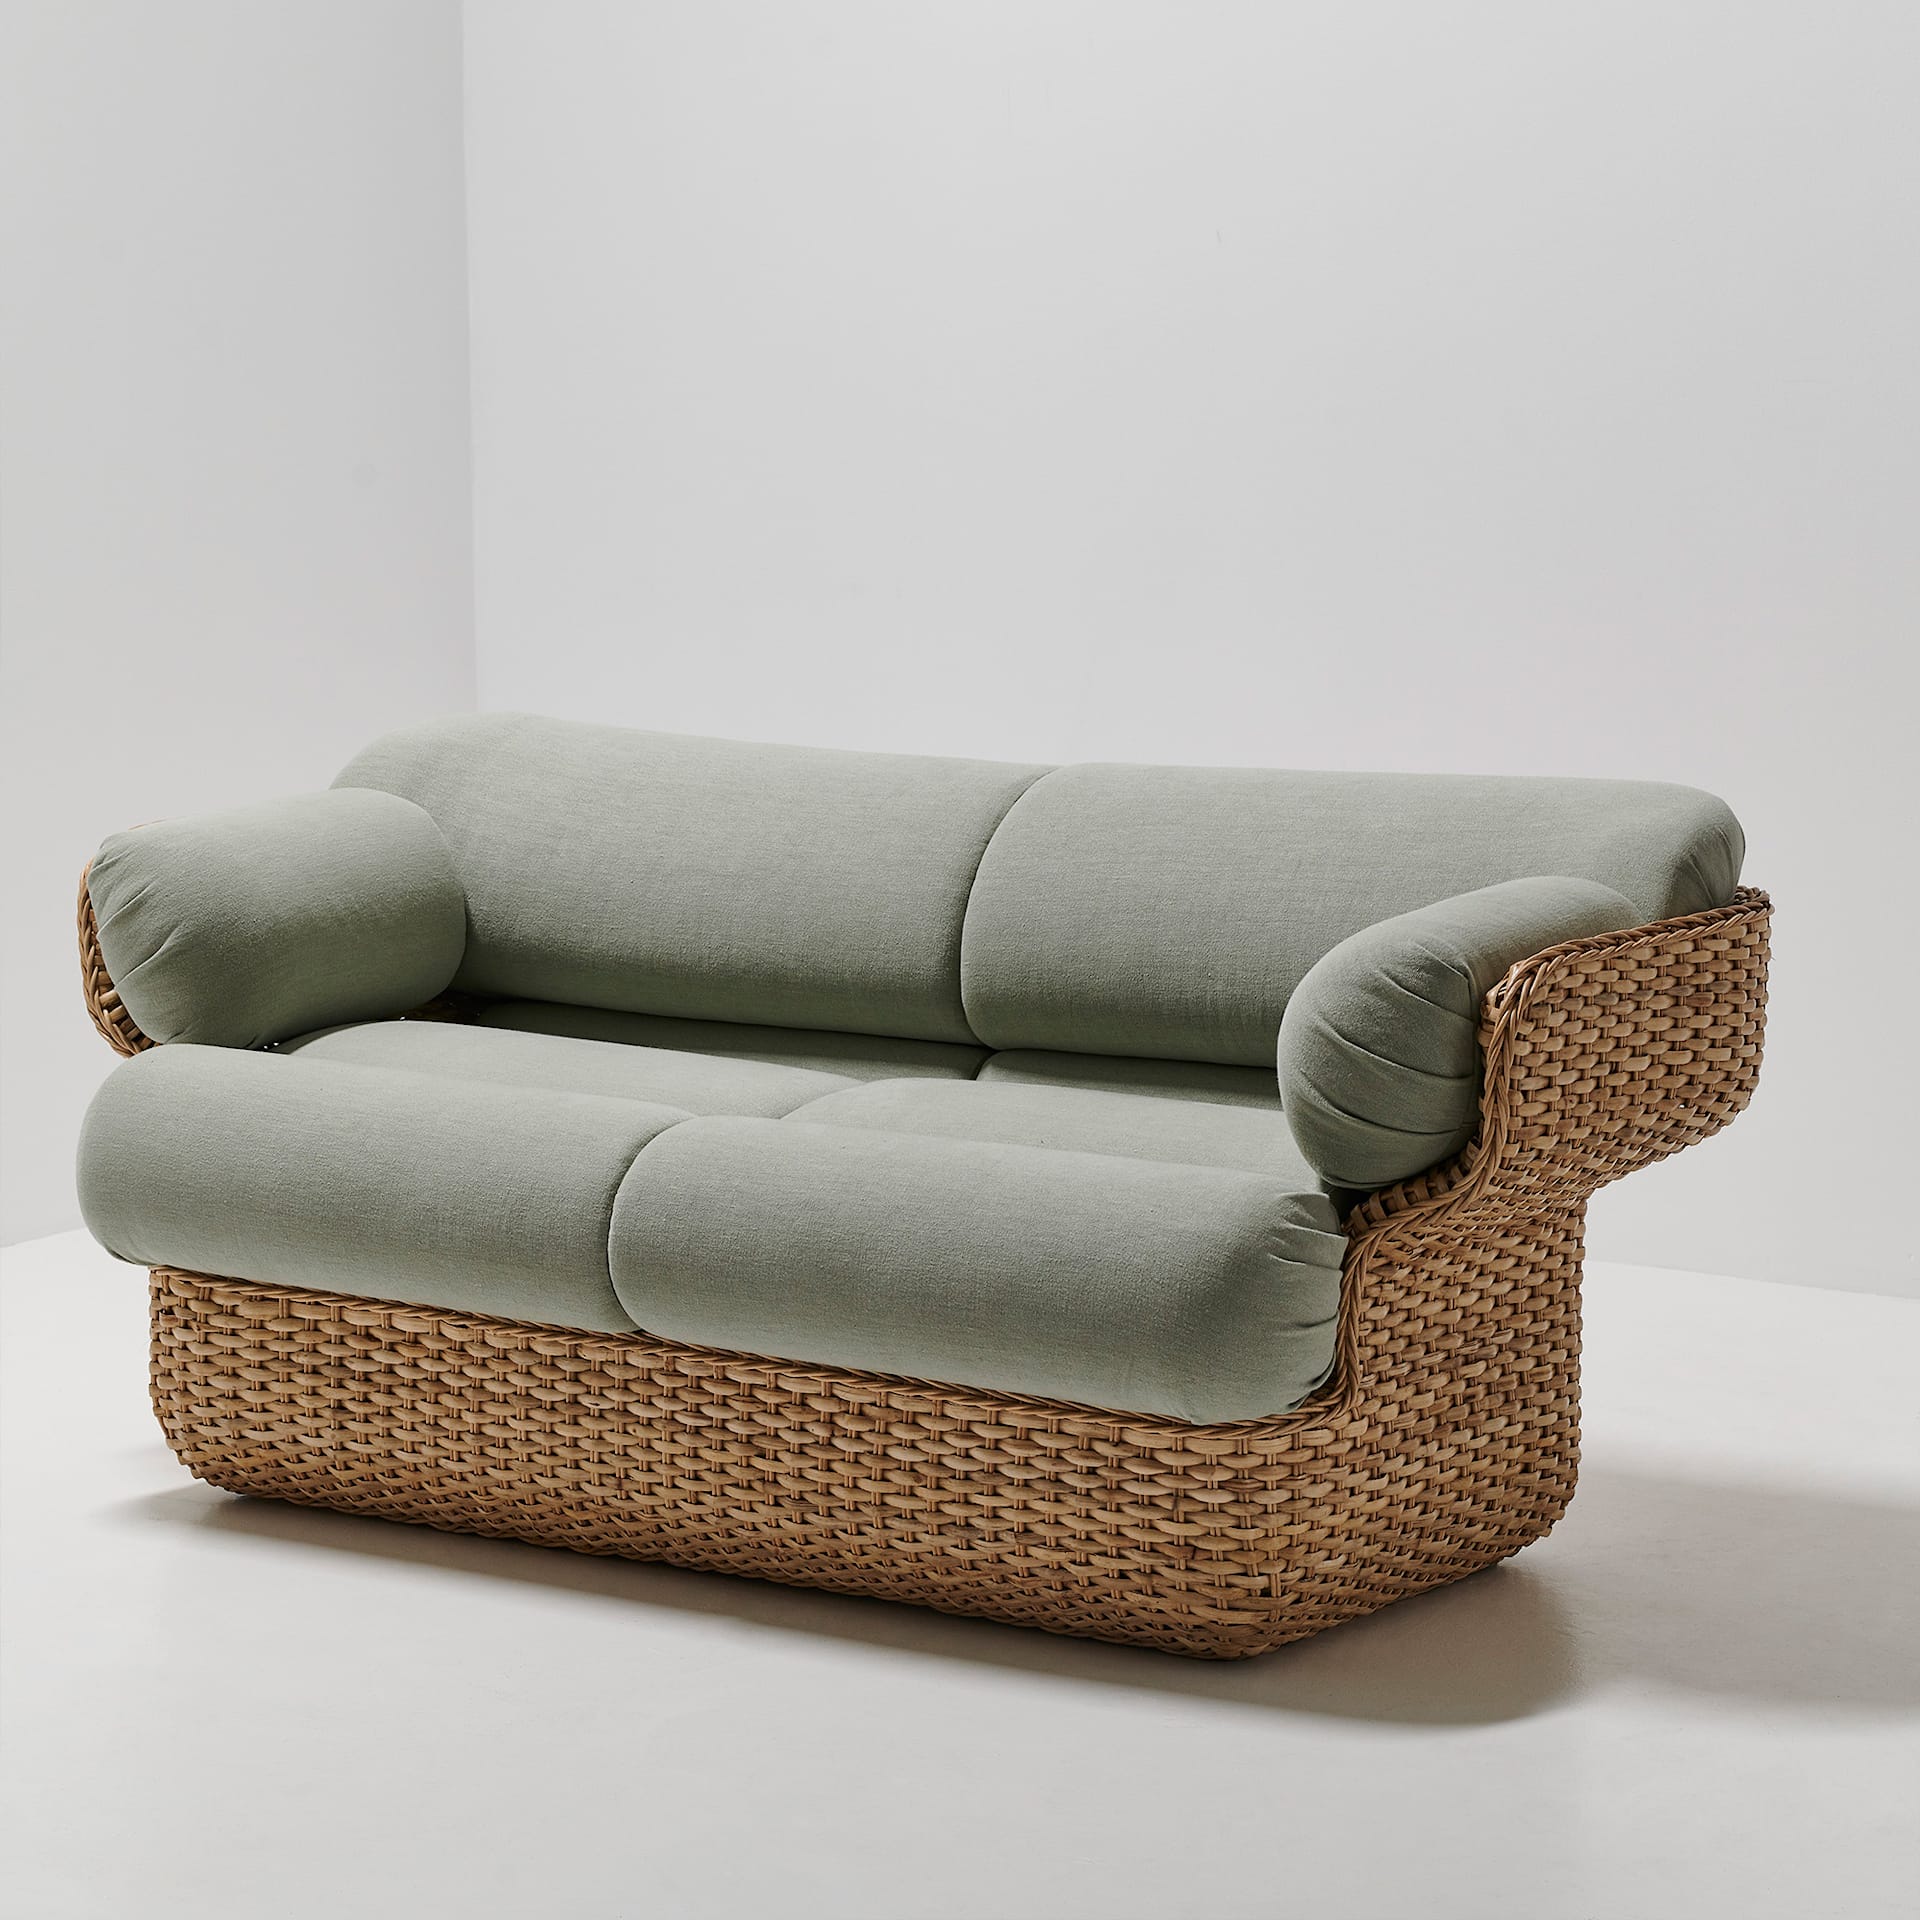 Basket Sofa - Fully Upholstered, 2-seater Rattan Belsuede Special FR 133, Dedar - Gubi - Joe Colombo - NO GA